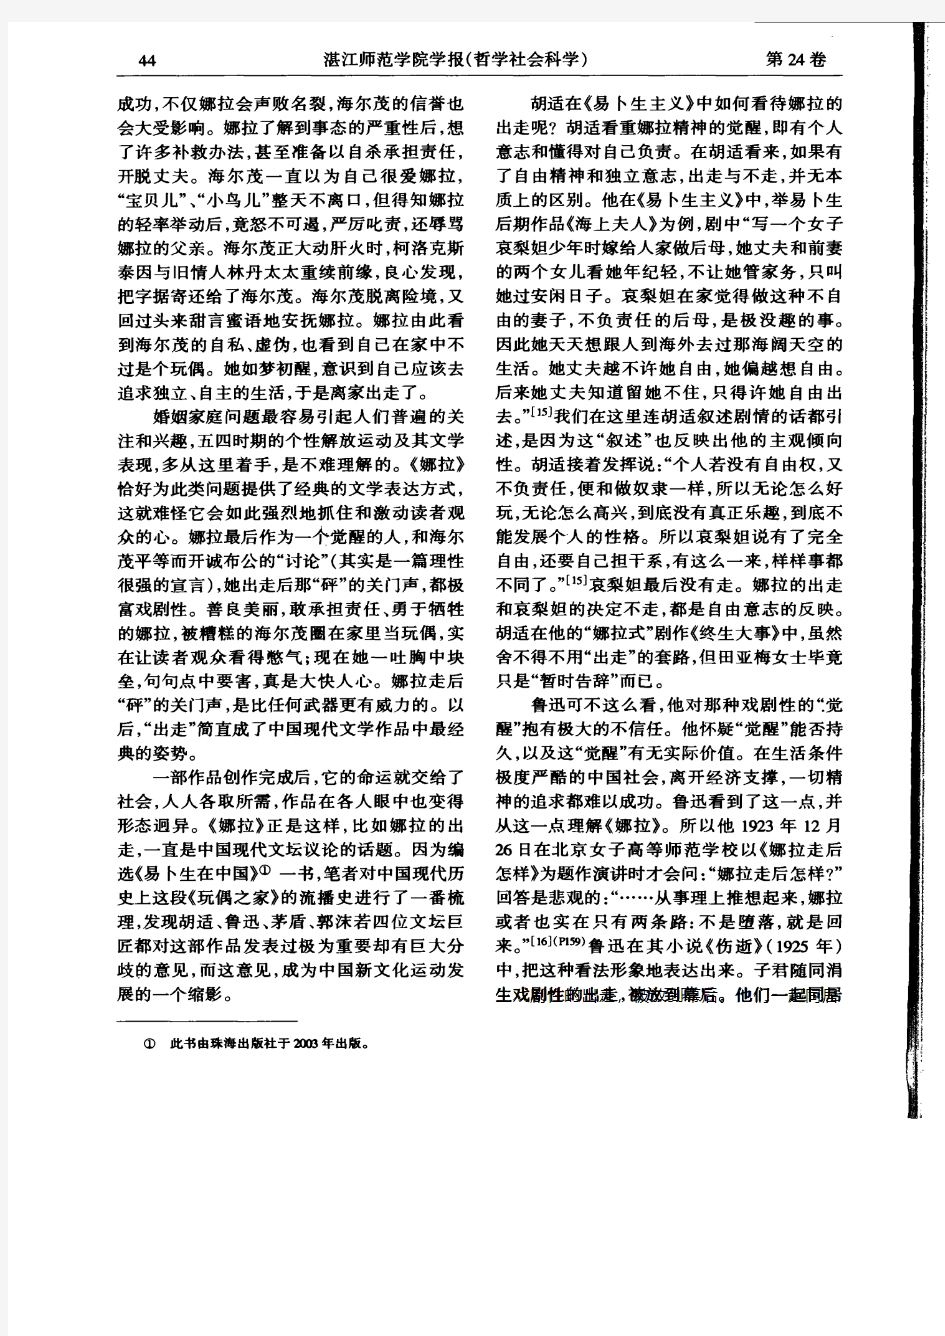 易卜生《玩偶之家》在中国的四种读法